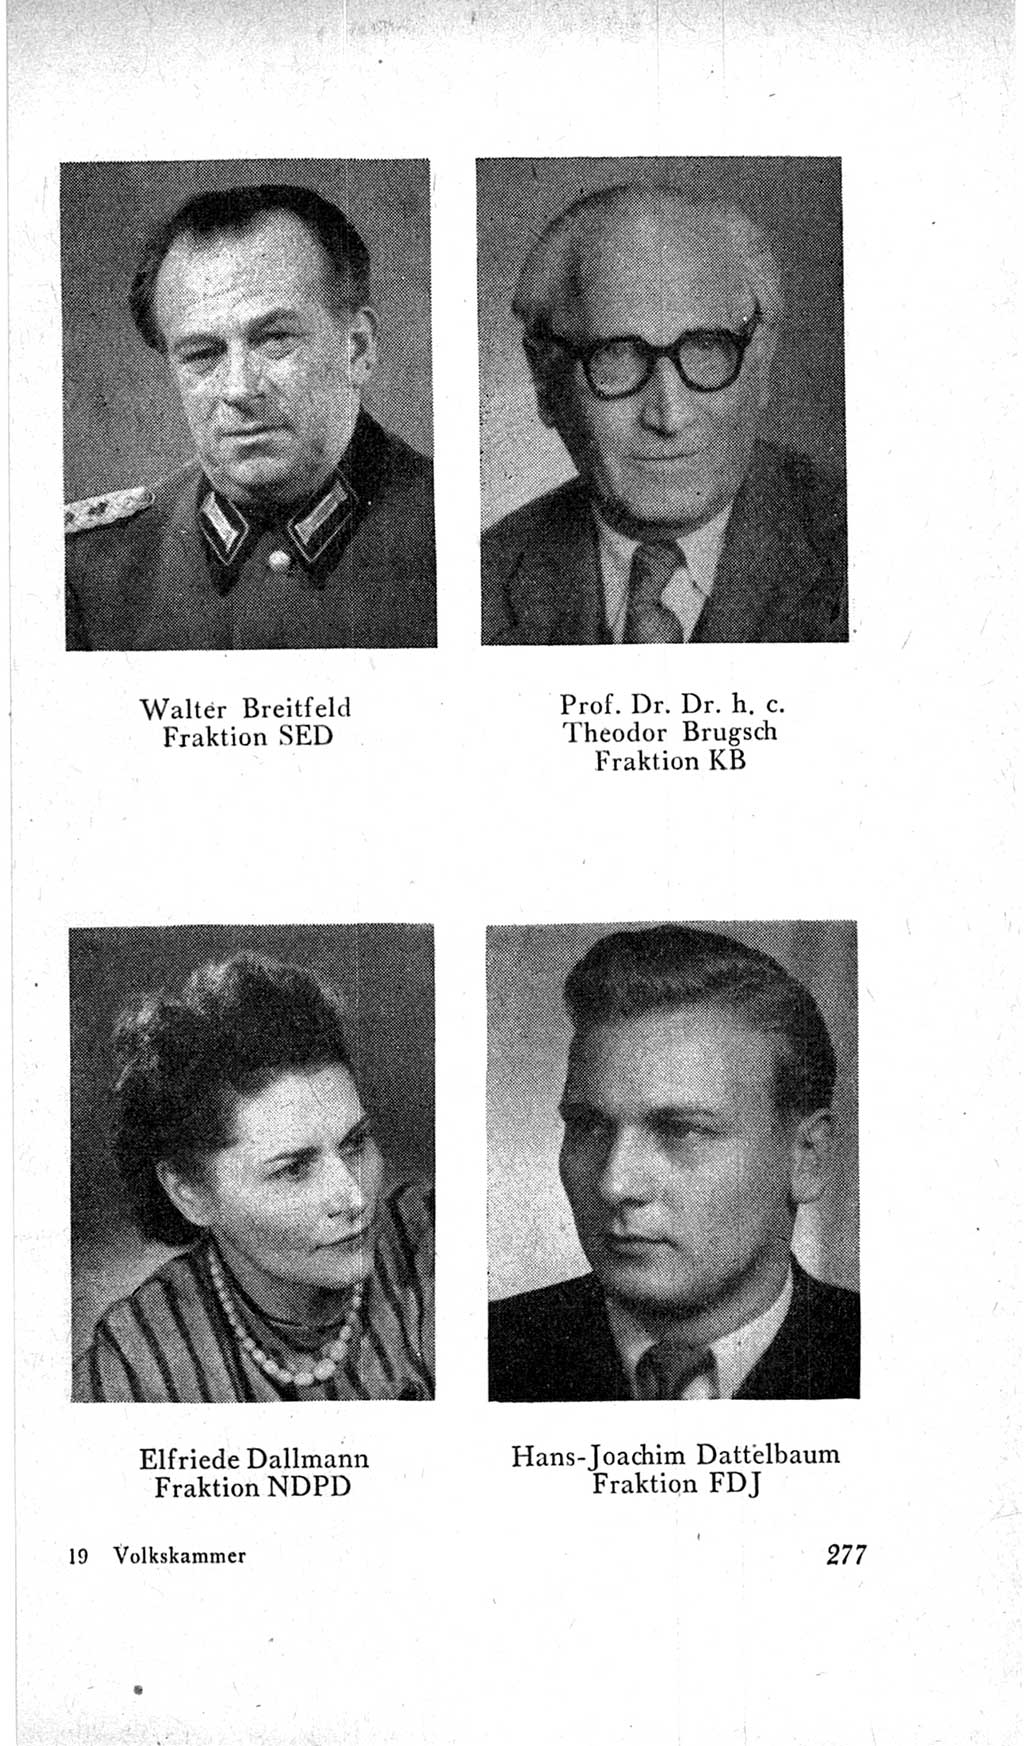 Handbuch der Volkskammer (VK) der Deutschen Demokratischen Republik (DDR), 2. Wahlperiode 1954-1958, Seite 277 (Hdb. VK. DDR, 2. WP. 1954-1958, S. 277)